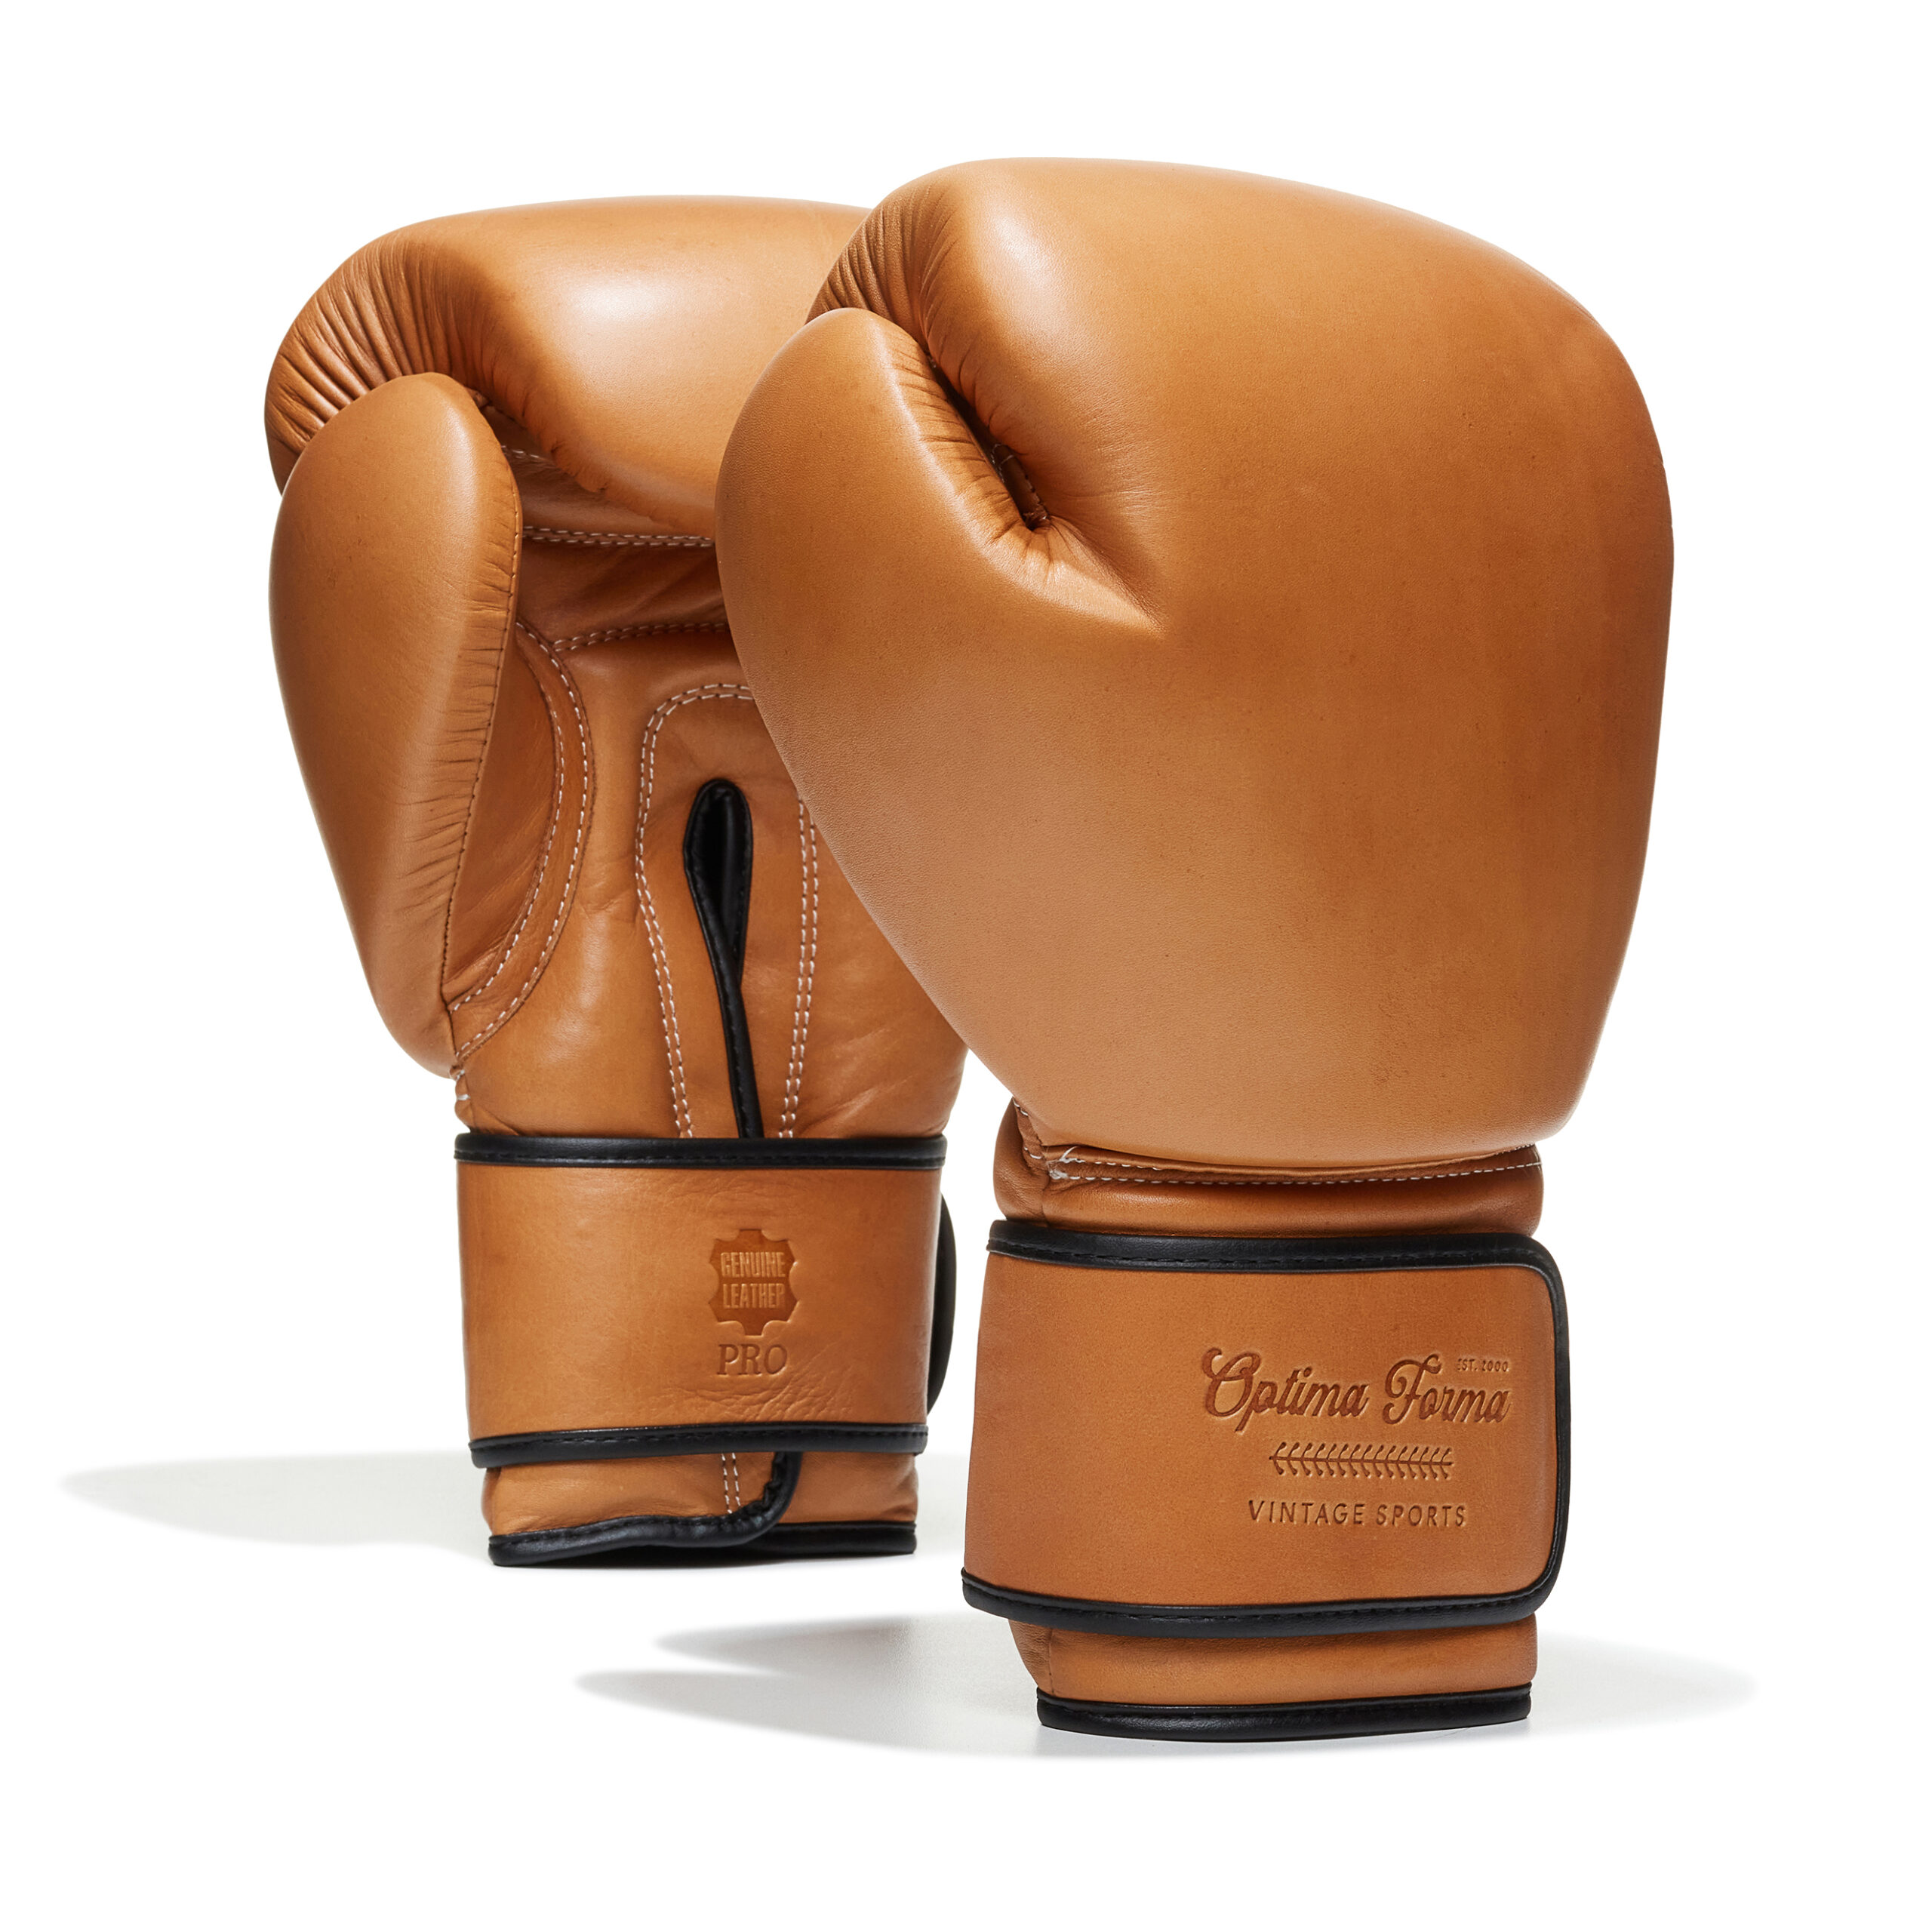 Optima Forma Vintage PRO Boxing Gloves - Tan - Vintage Sport Shop